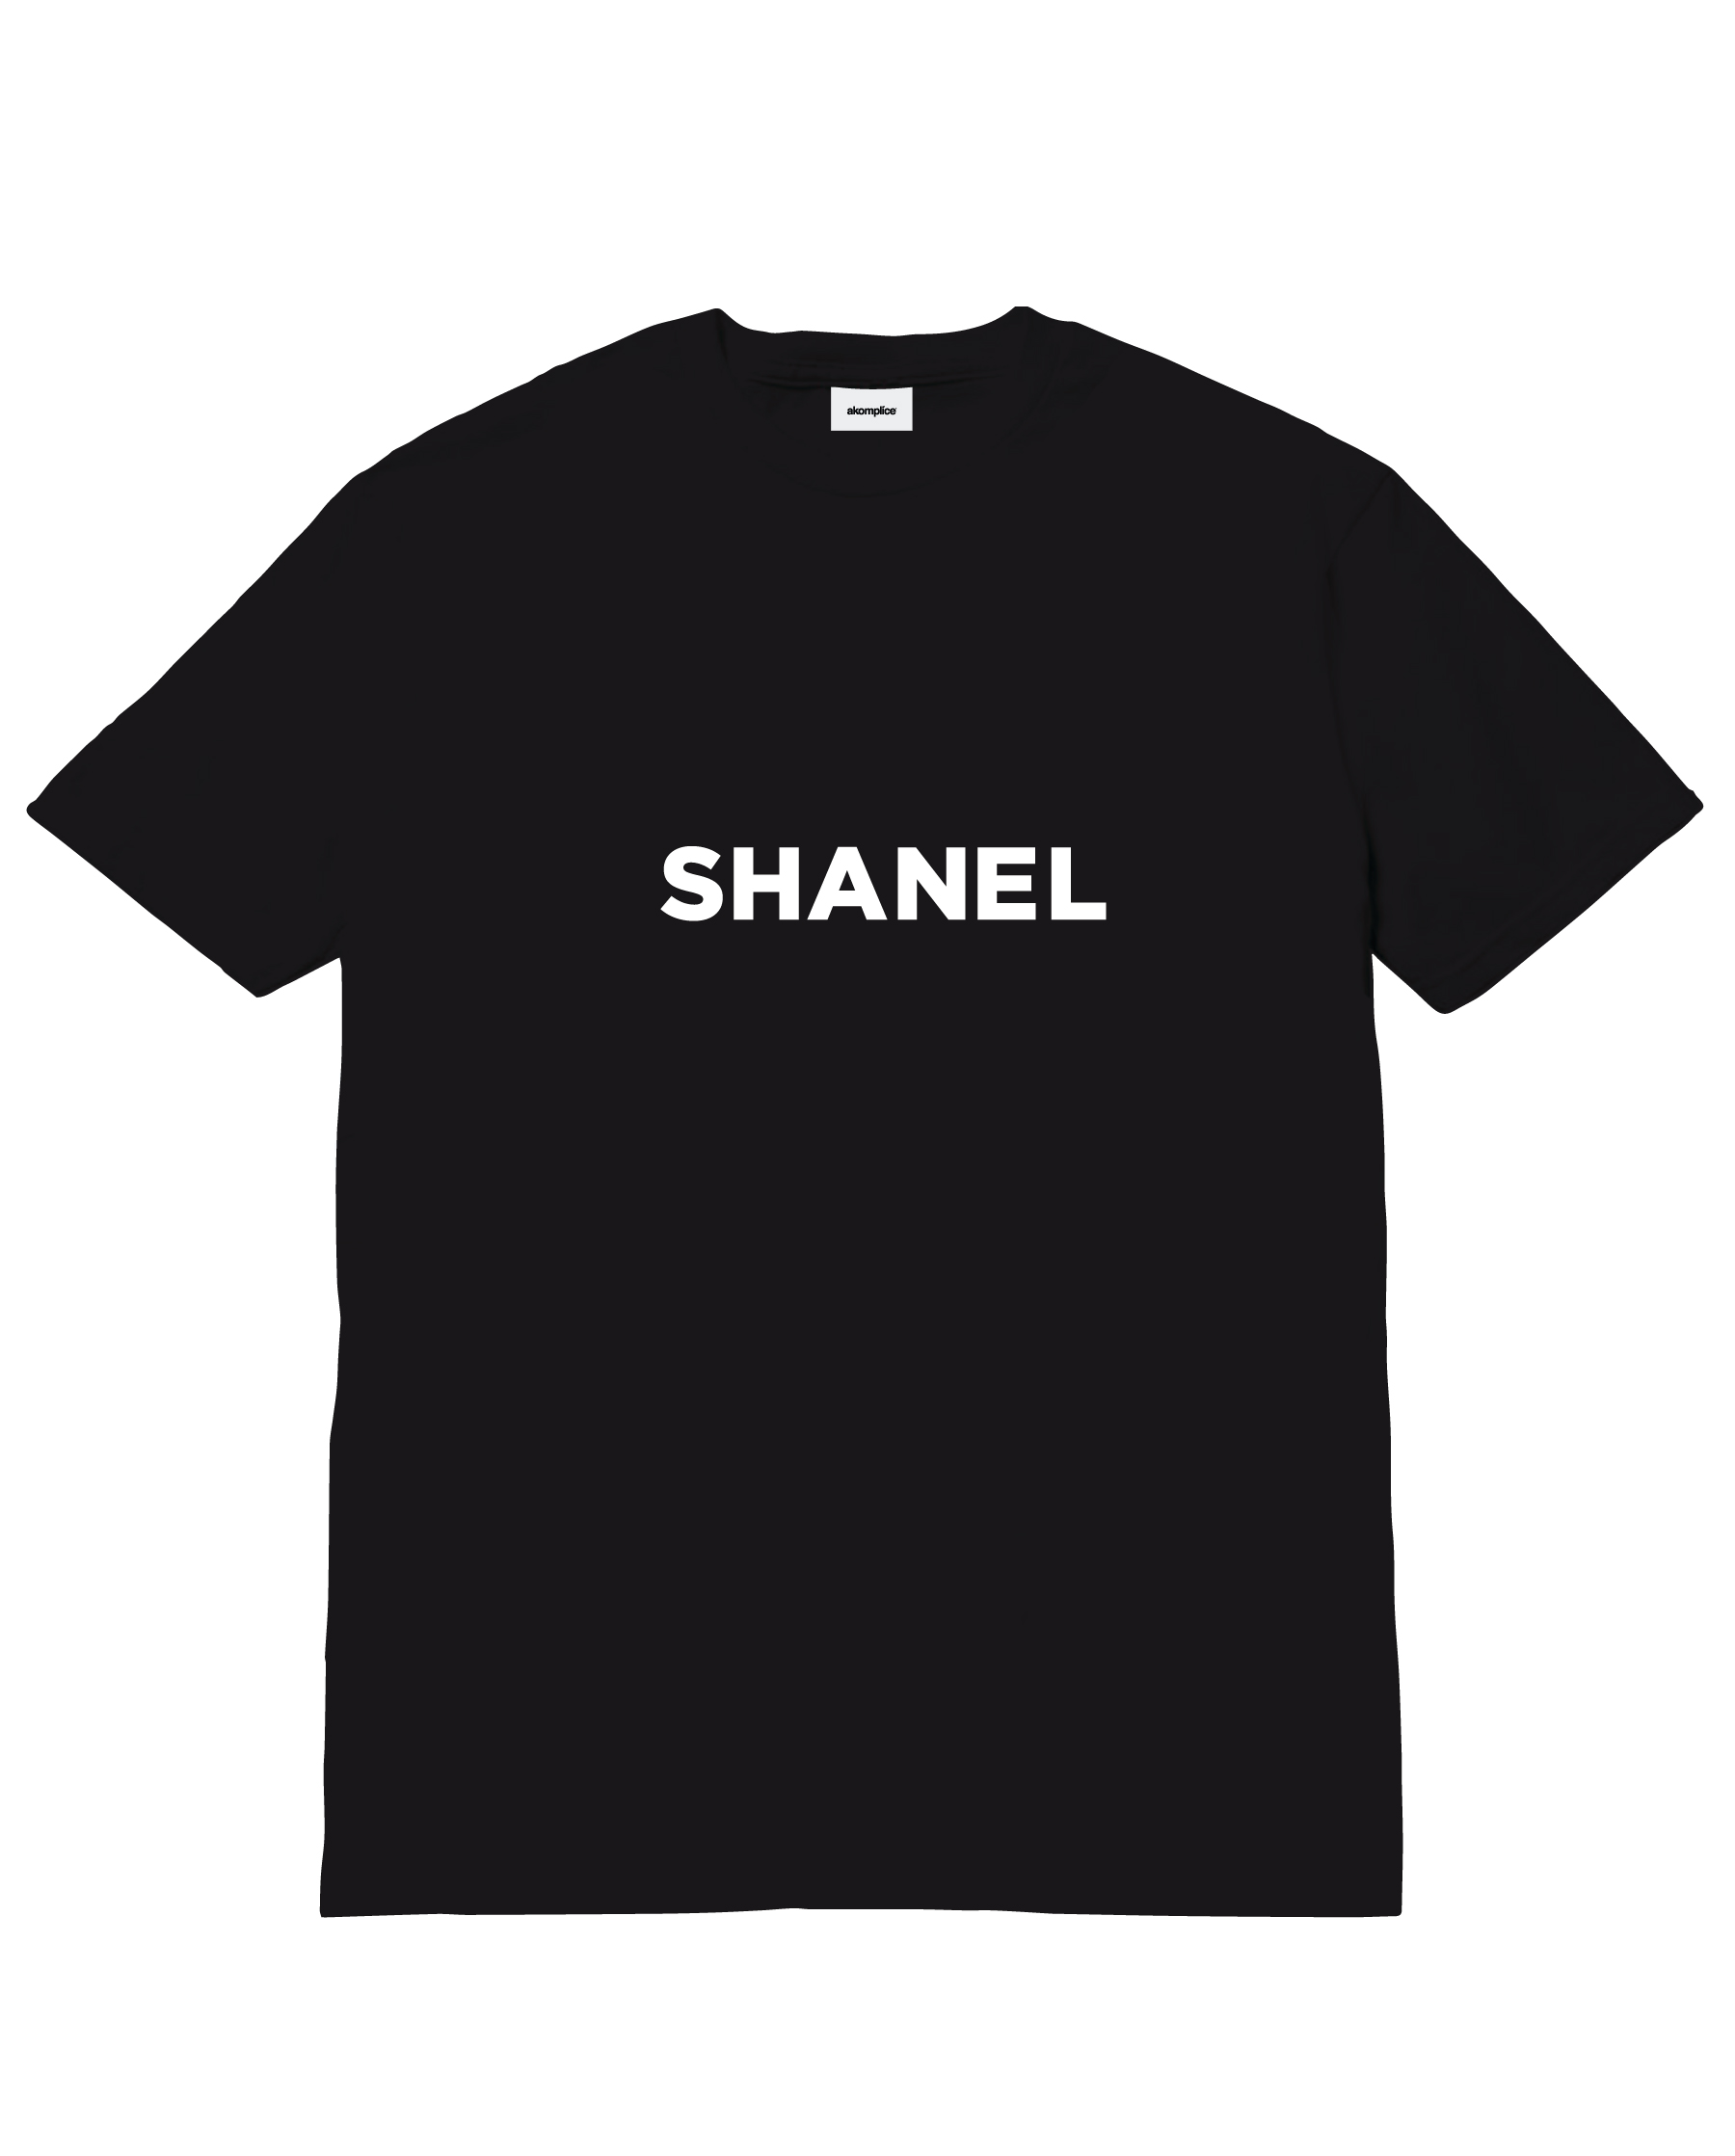 shanel clothing